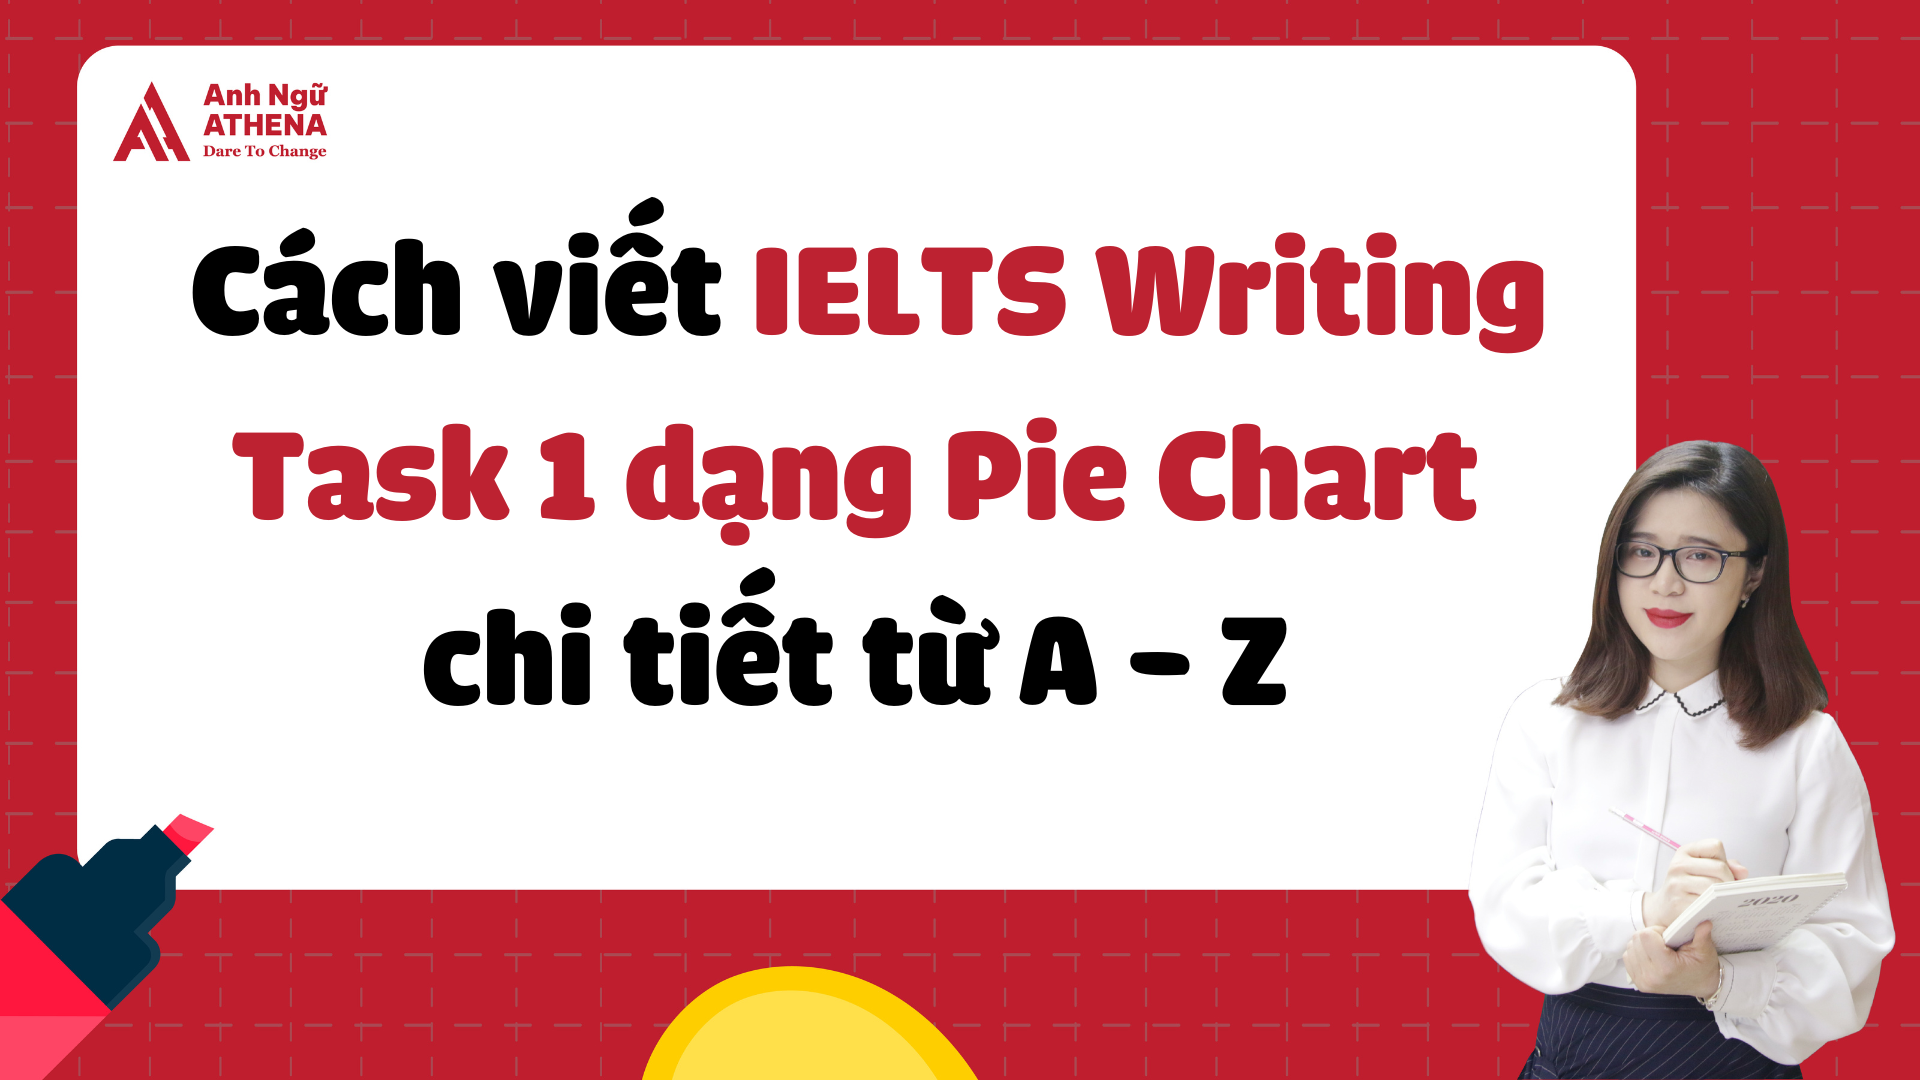 Cách viết IELTS Writing Task 1 dạng Pie Chart chi tiết nhất